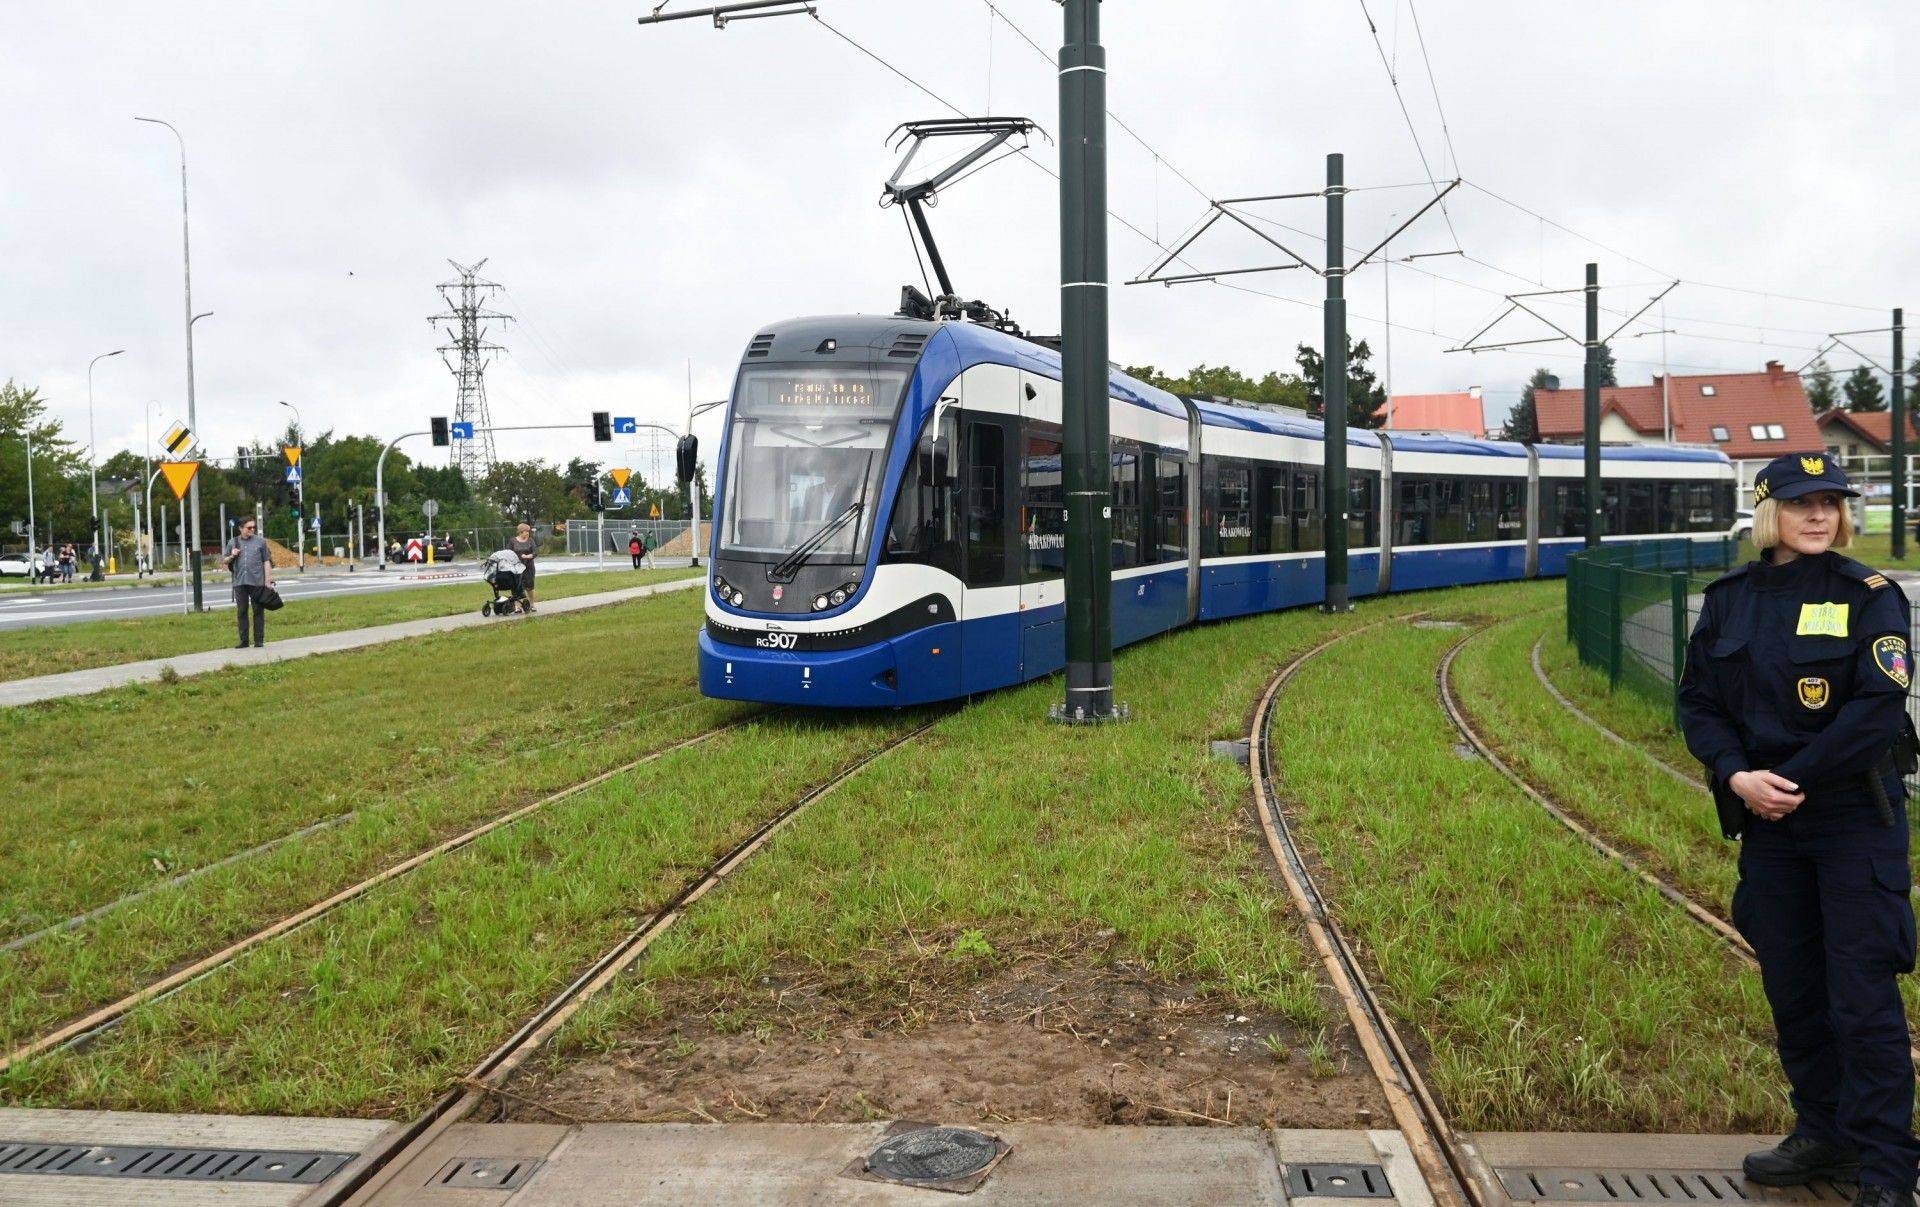 Olbrzymie zainteresowanie nową trasą tramwajową, dziennie ponad 20 tysięcy osób